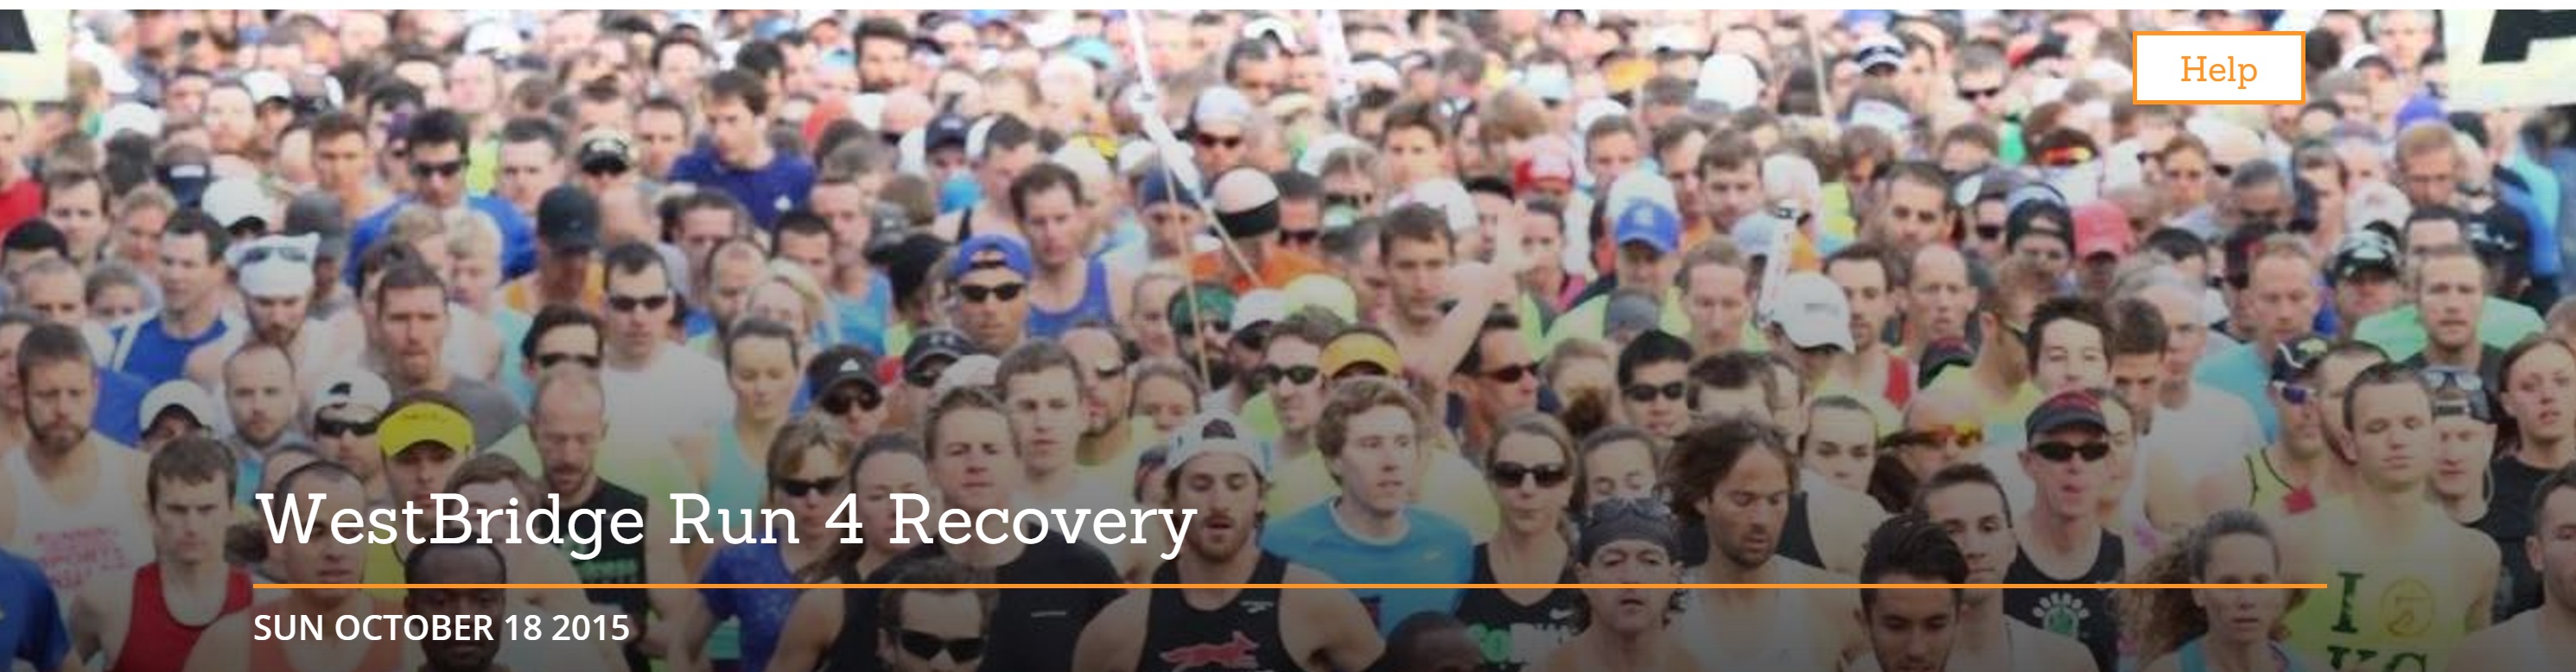 Westbridge-advocacy events-run 4 recovery